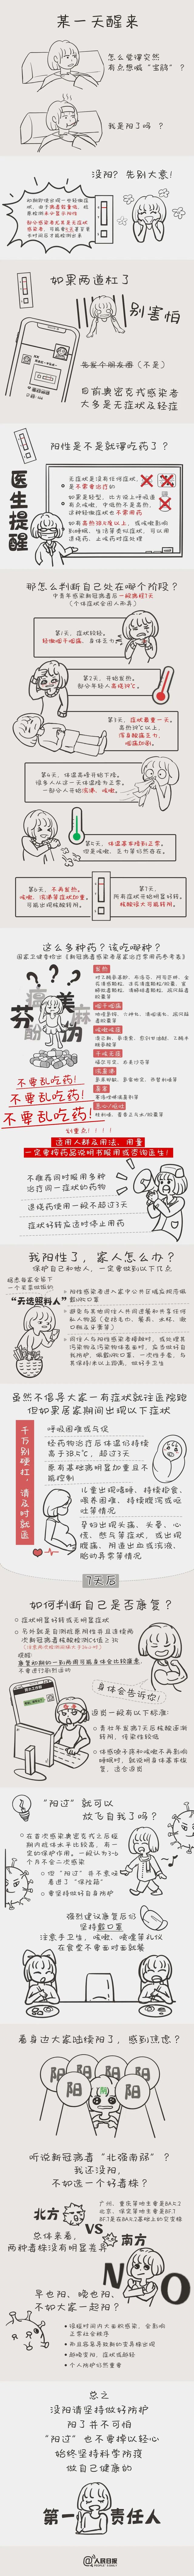 来源：人民日报微博，策划：时雪、胡晓蕊、陈蓦然 ，制图：刘冰，手绘：吴梦姝 